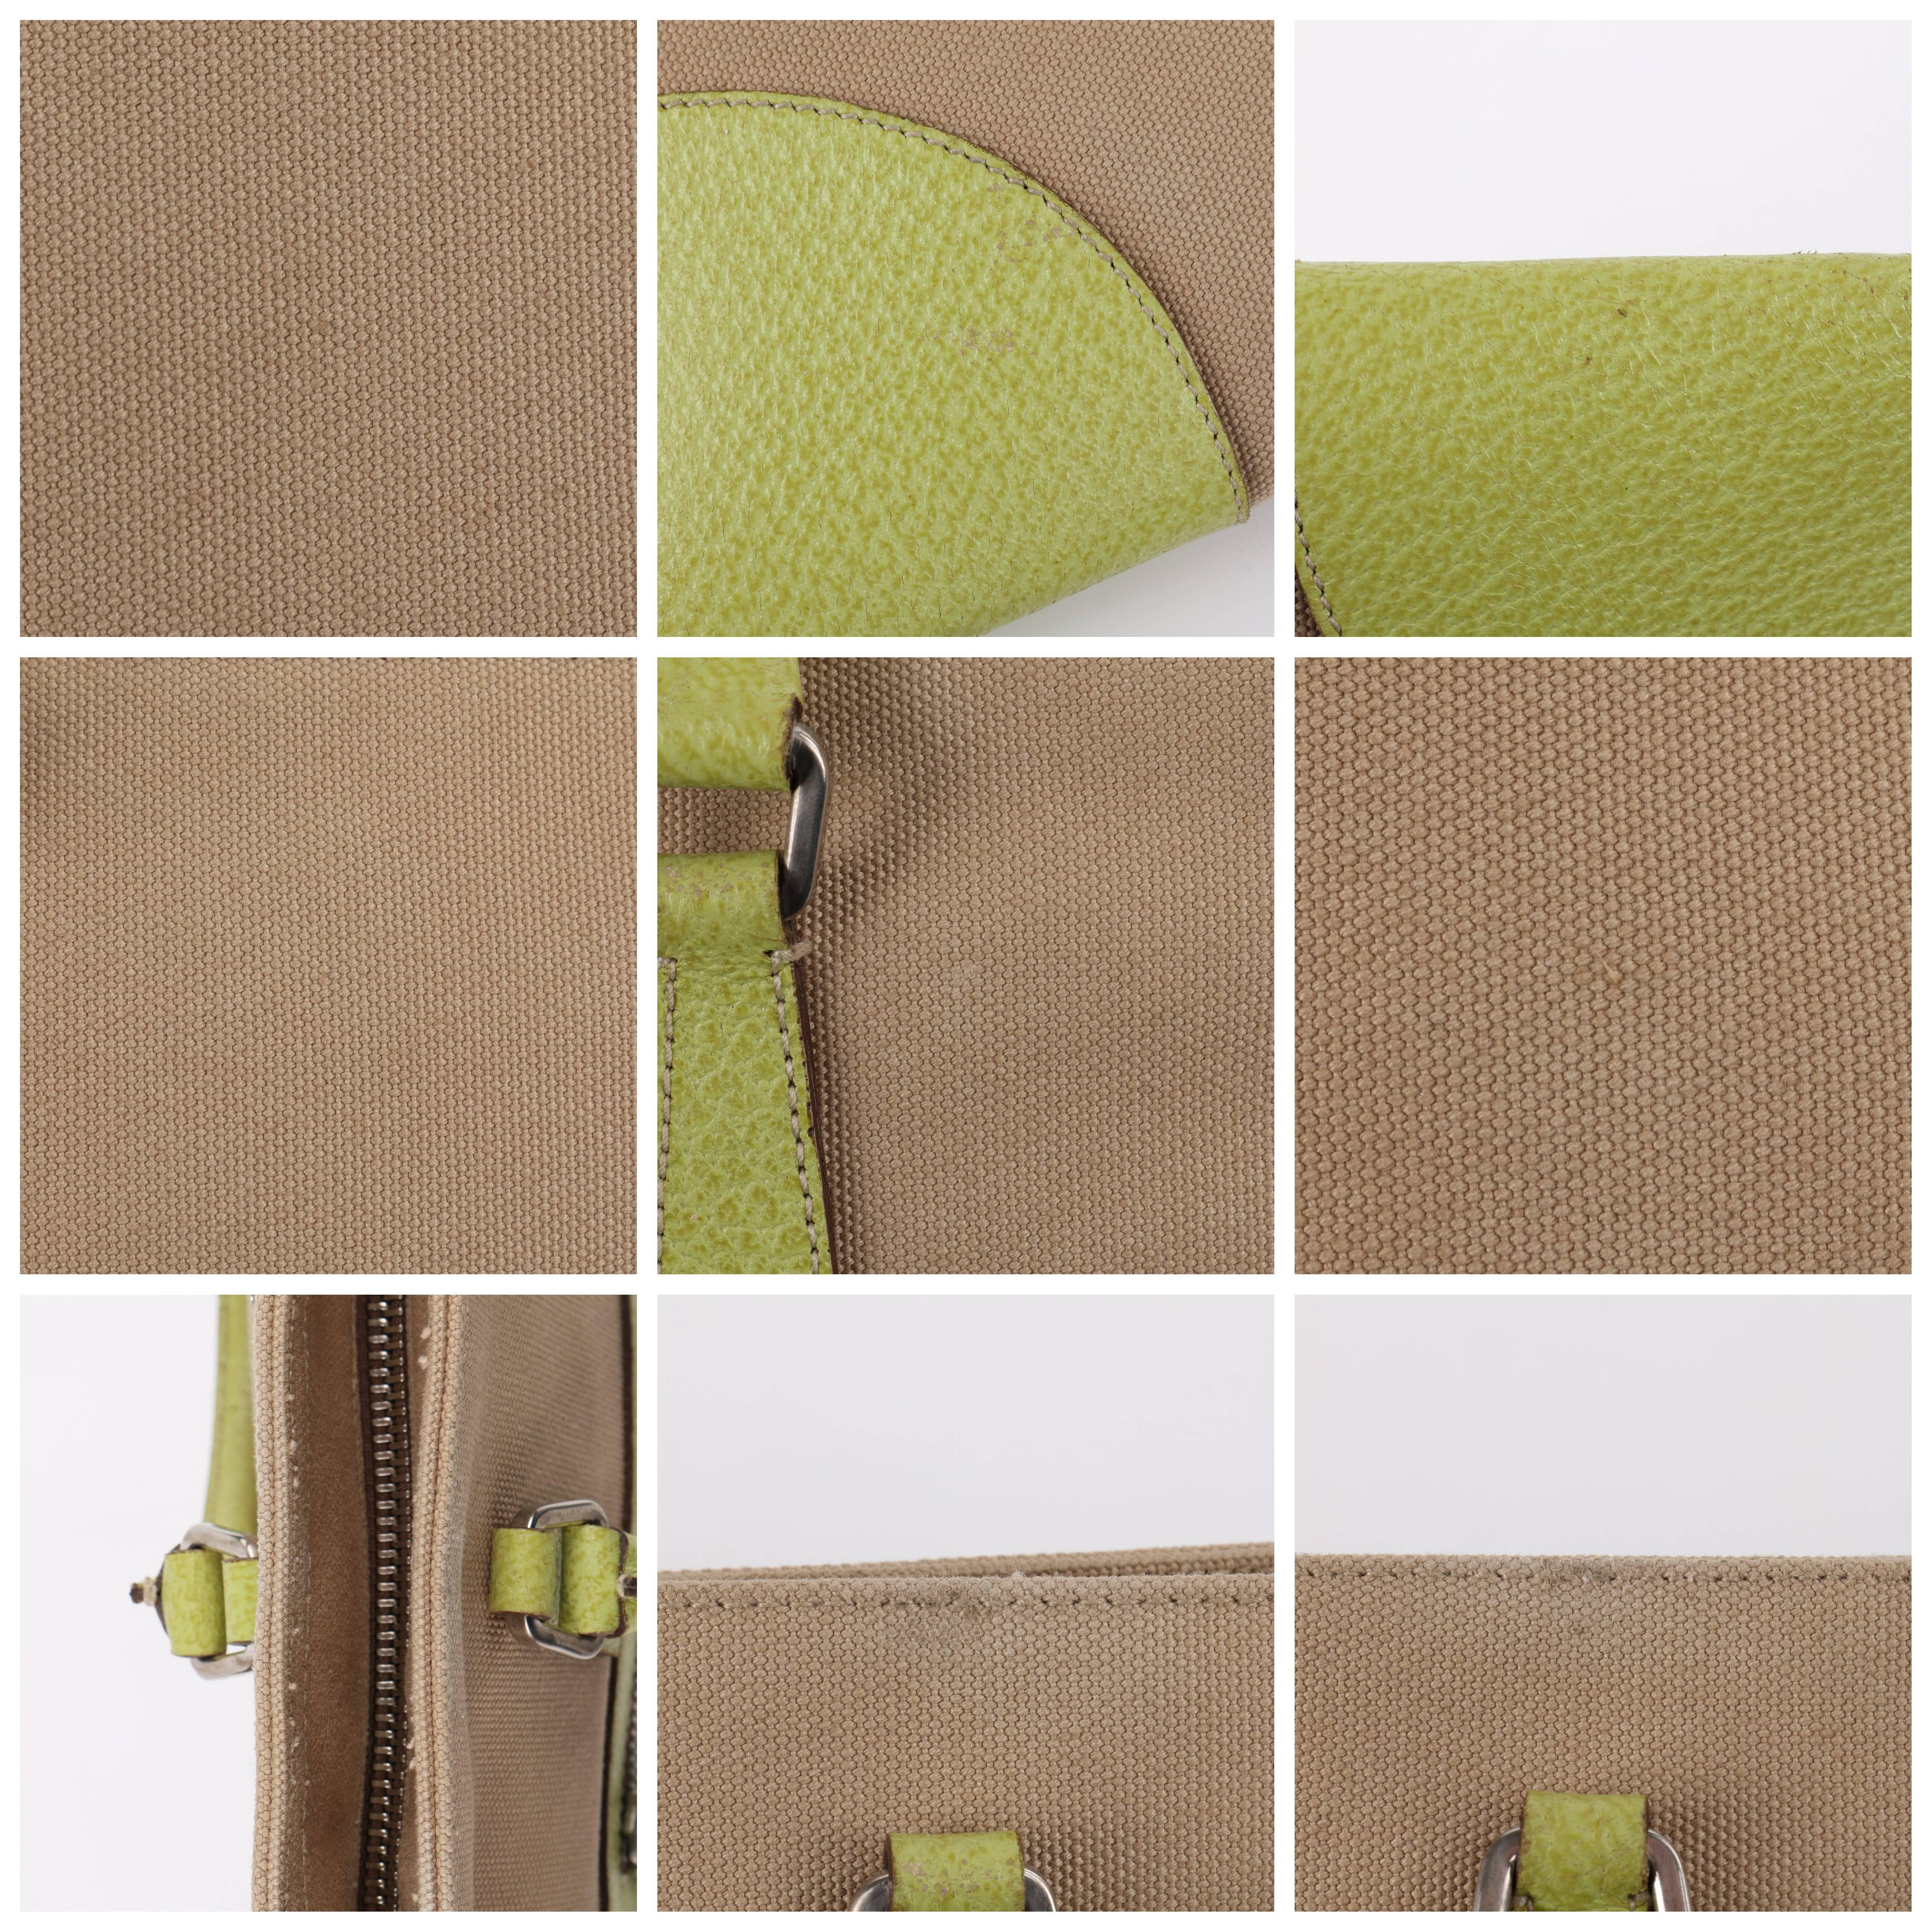 PRADA Khaki Canapa Canvas & Chartreuse Green Leather Tote Bag Purse 2